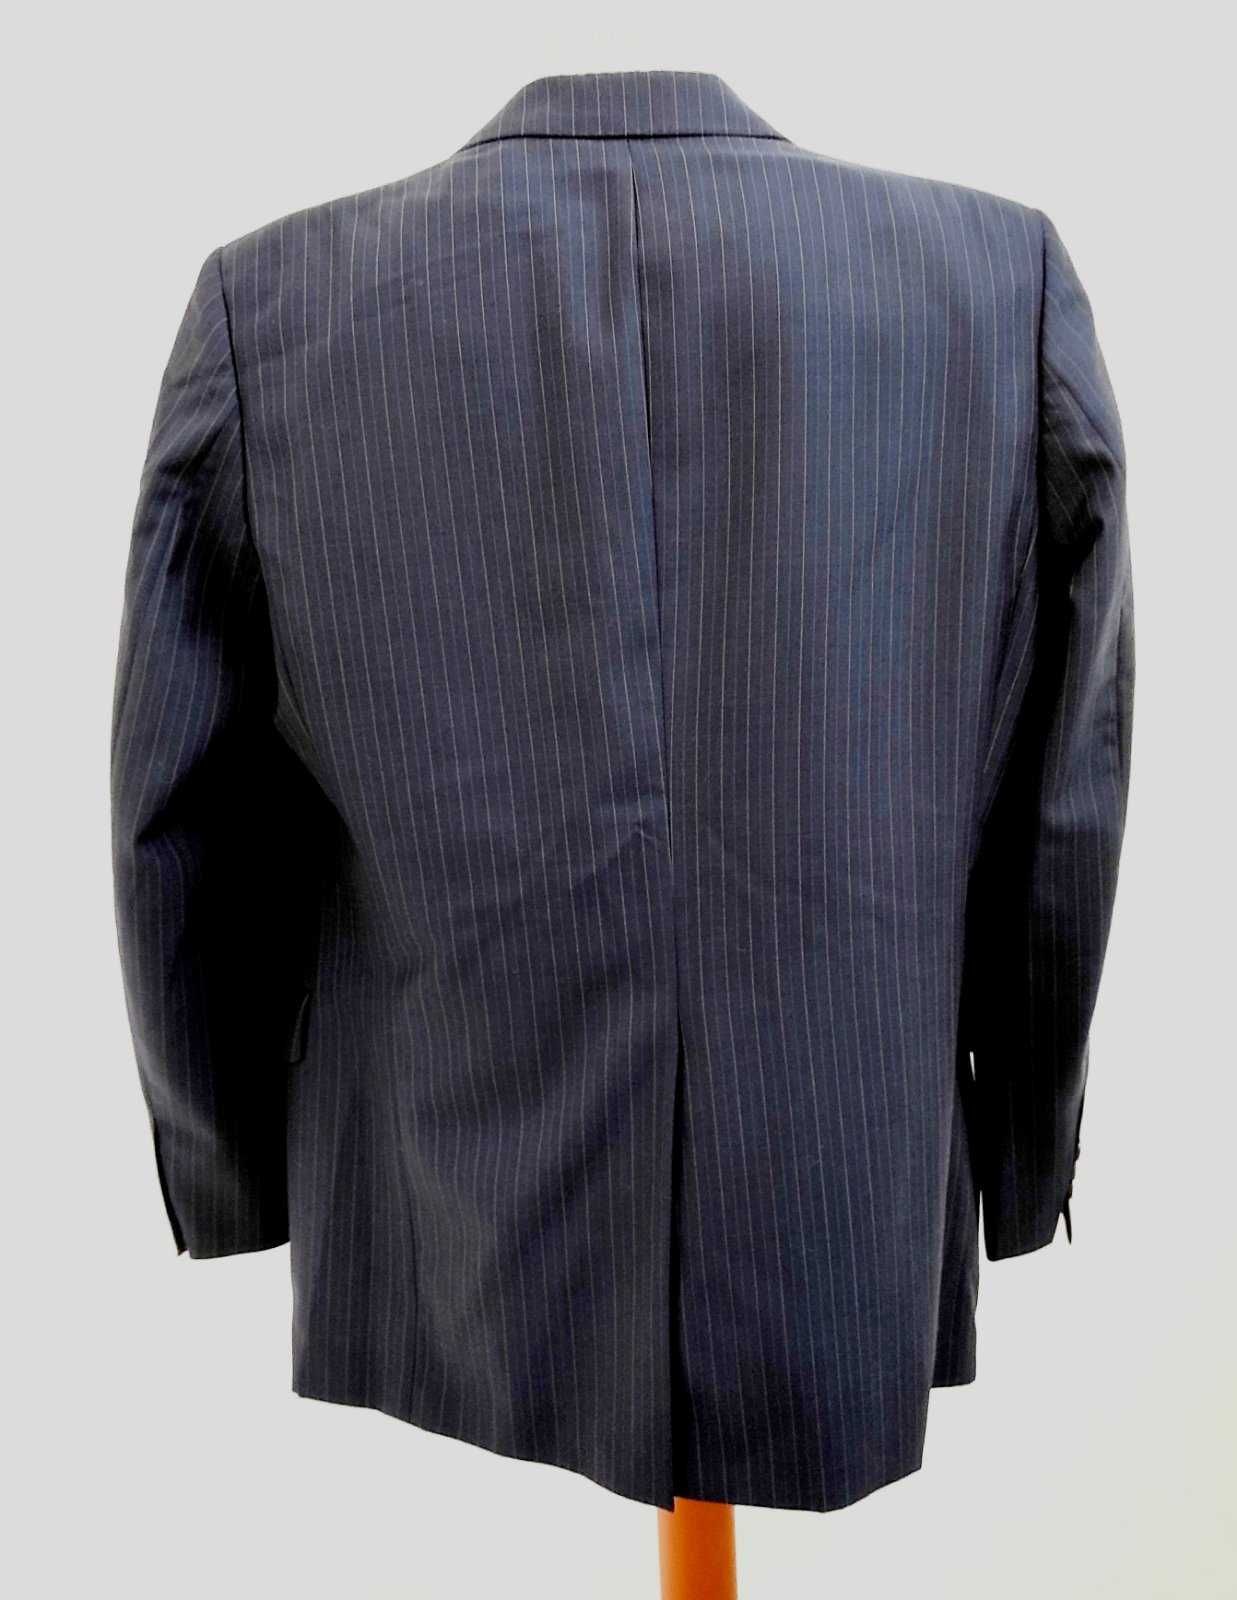 Ново сако на бранда Burberrys размер 26 направен в германия